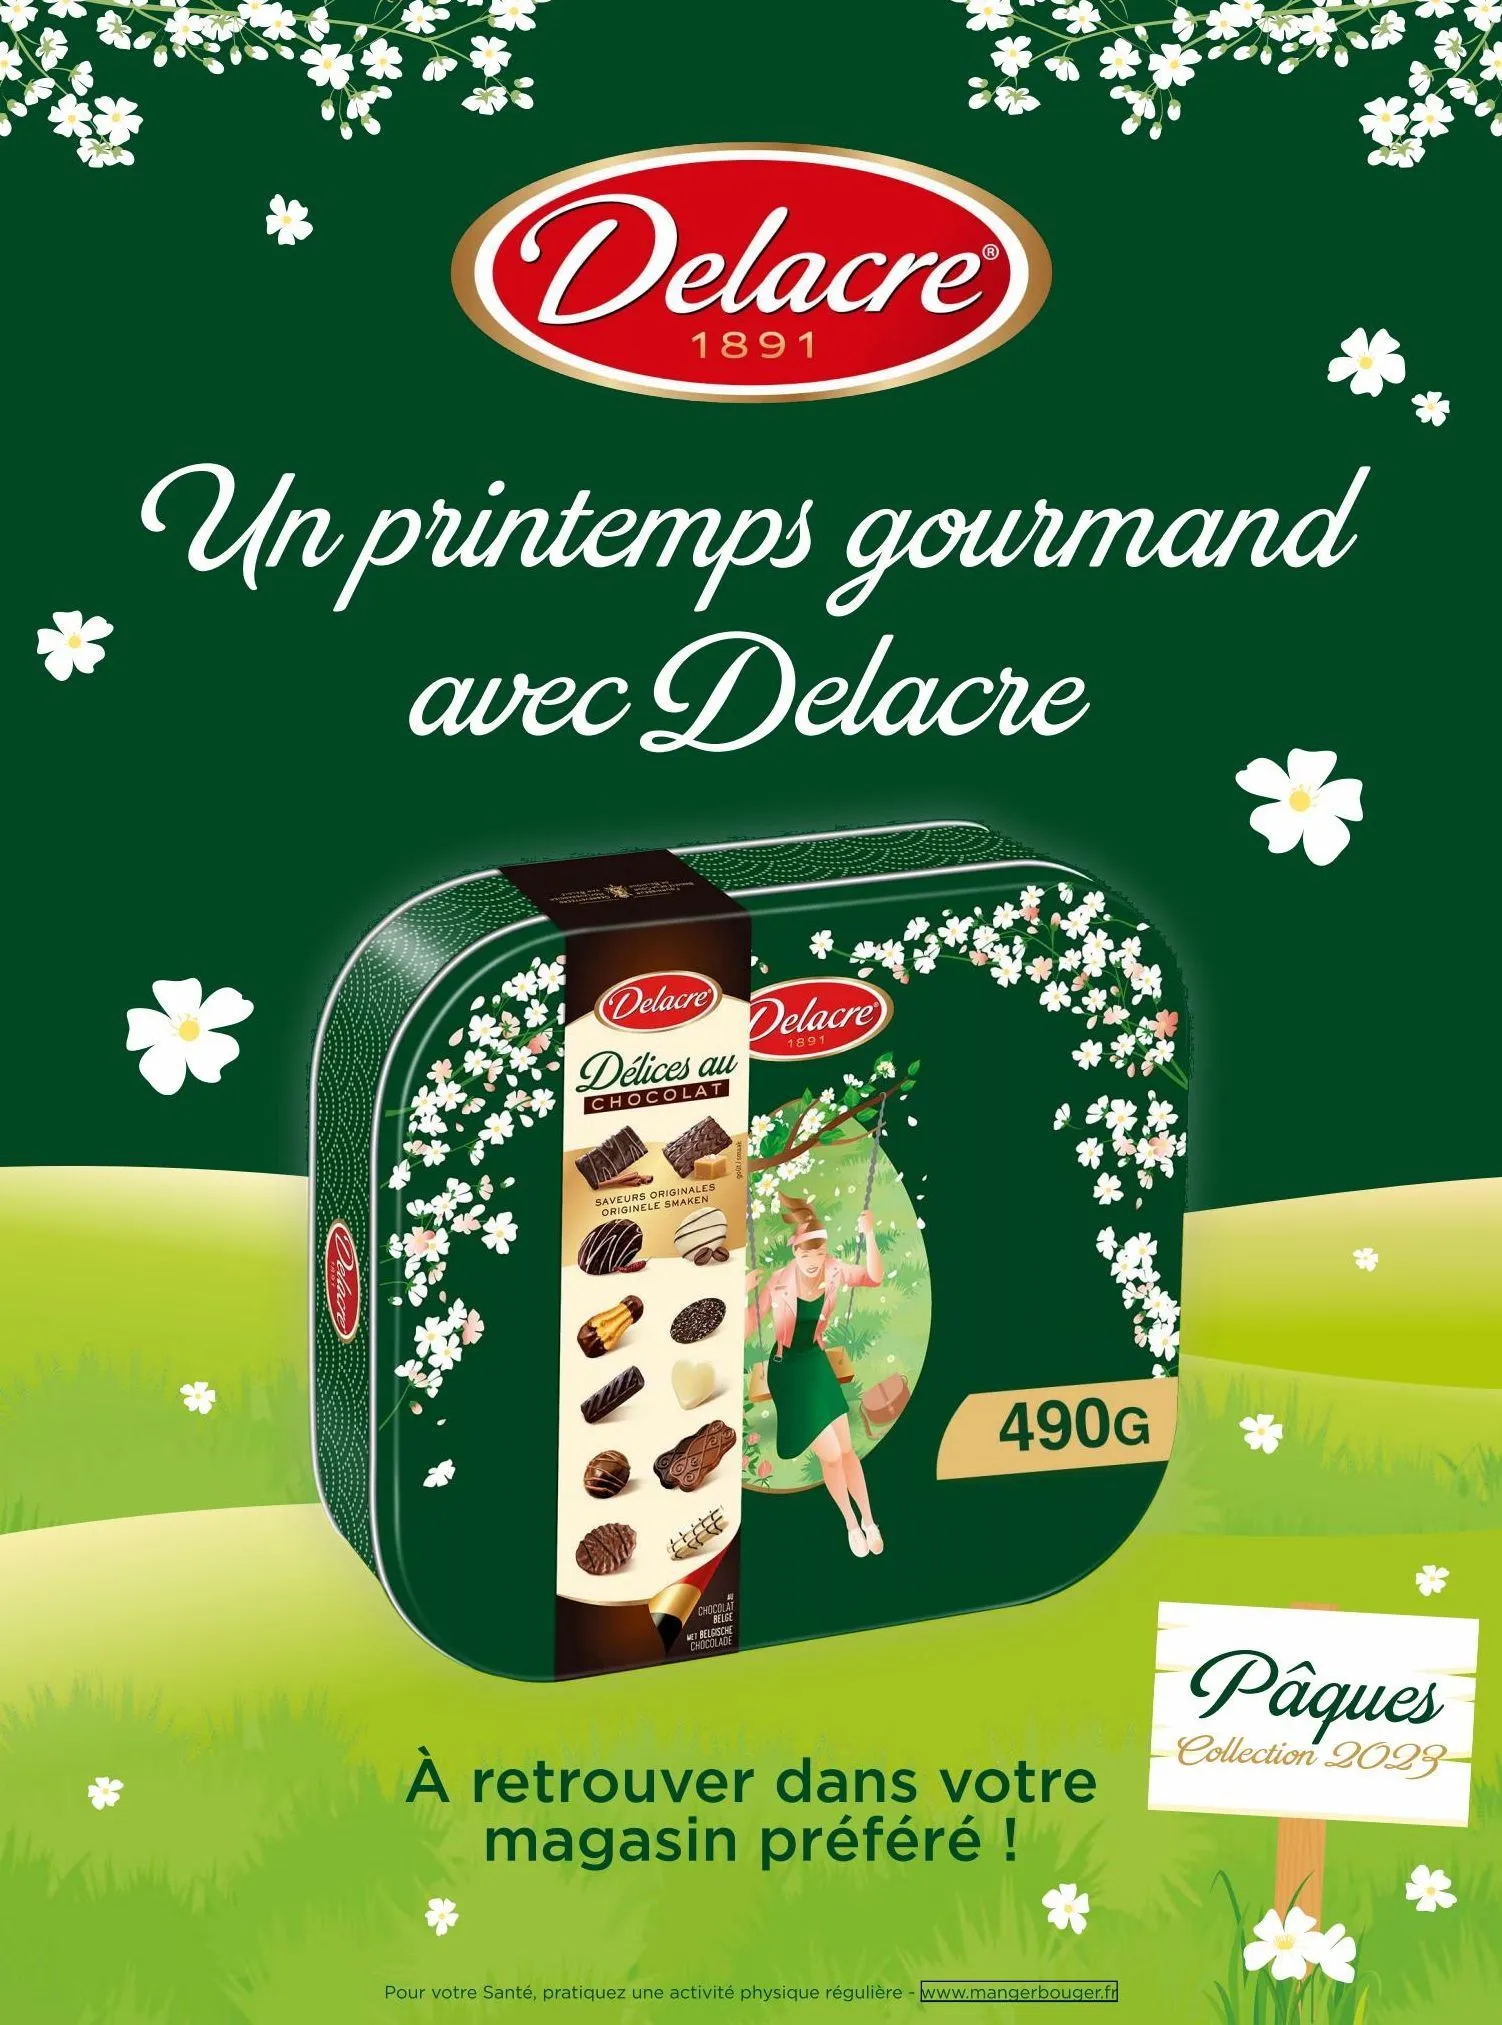 Promo Delacre biscuits chez Lidl